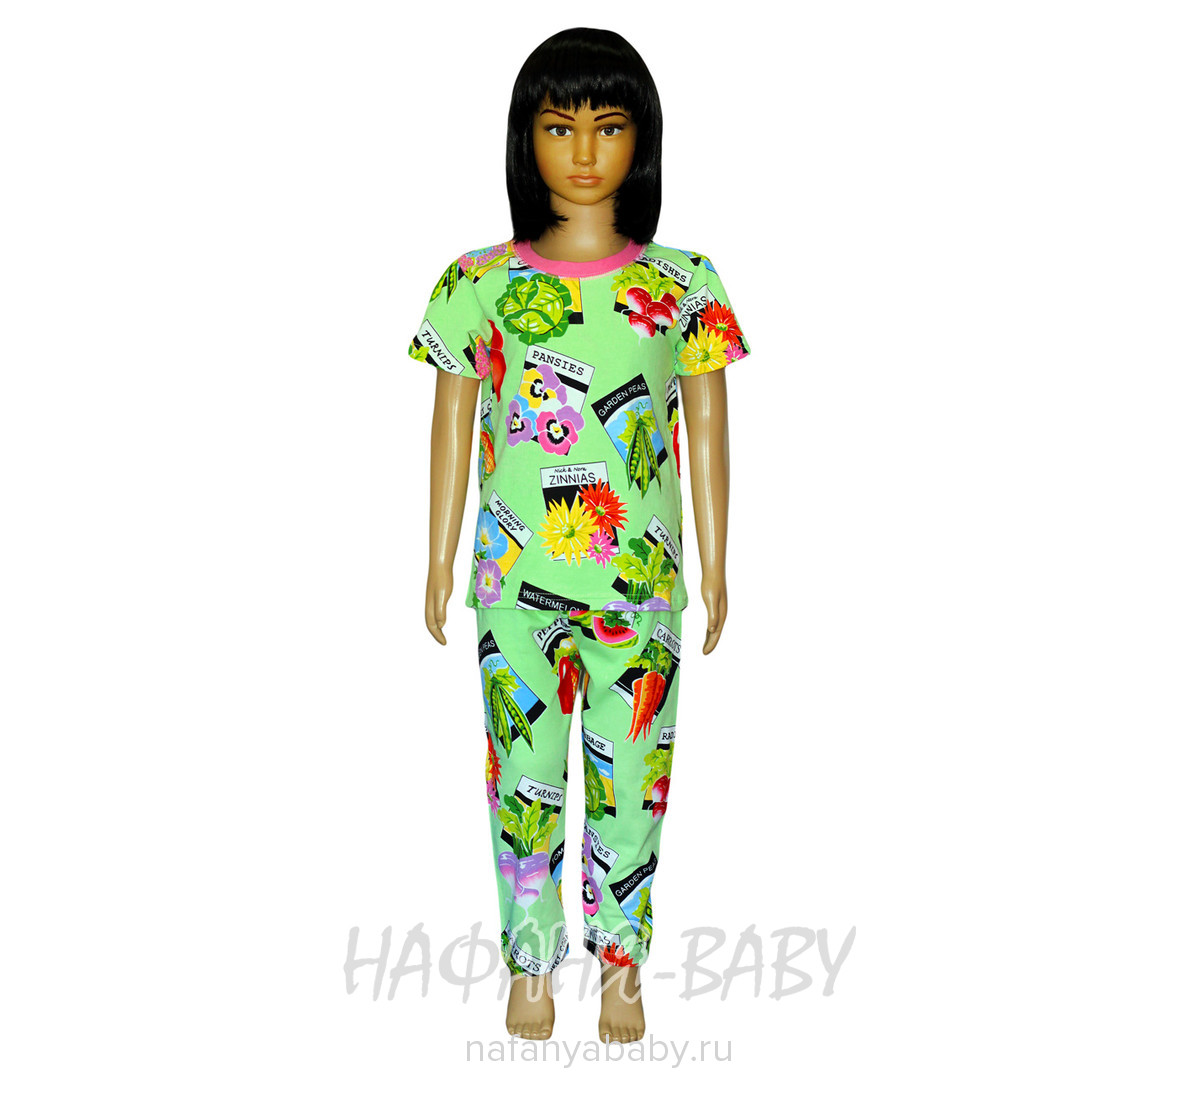 Детская пижама Sma STAR, купить в интернет магазине Нафаня. арт: 4338.